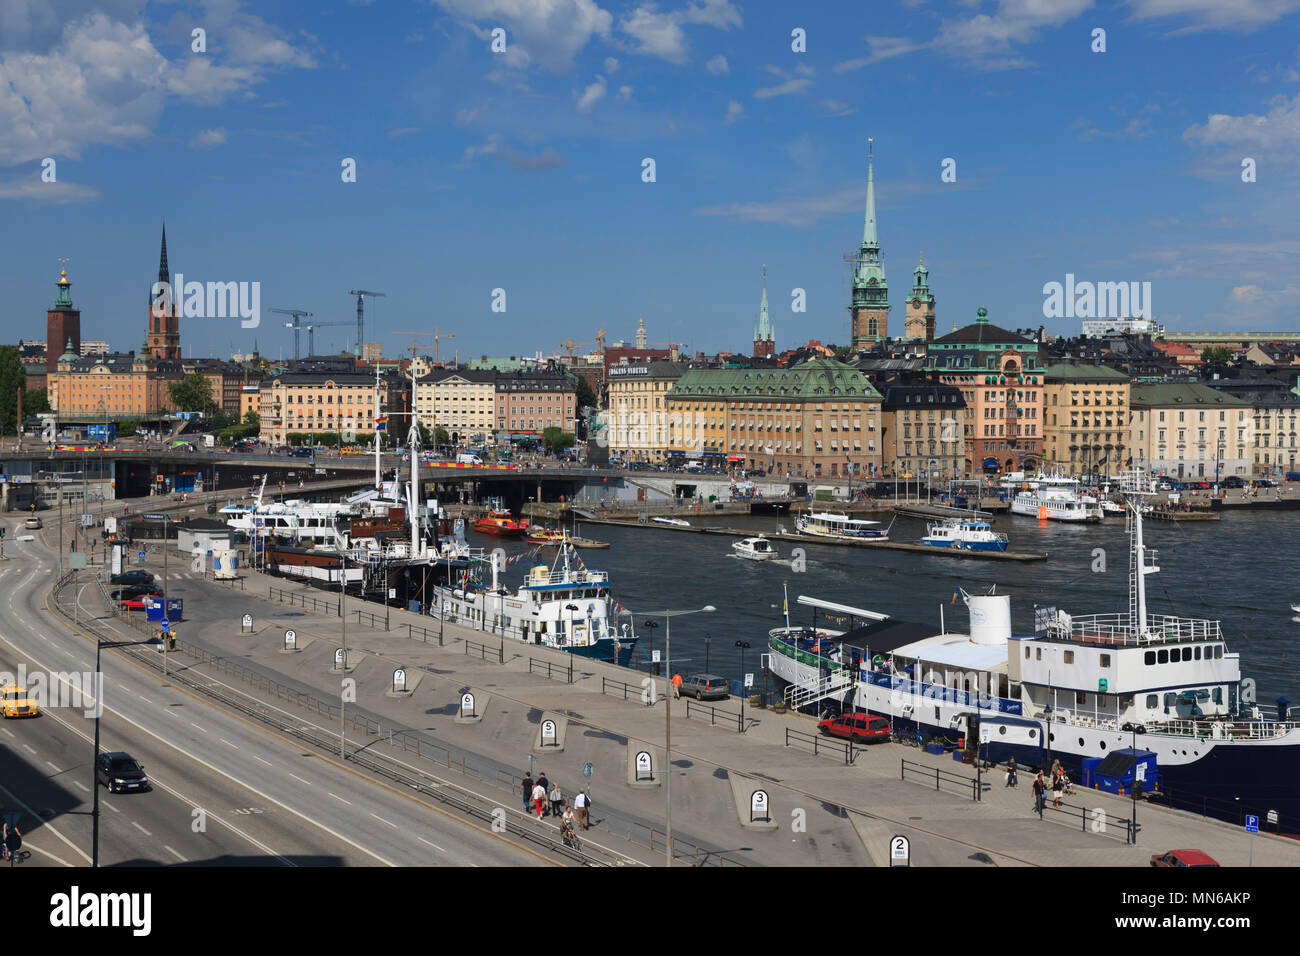 Panorama Skyline der geschäftigen Innenstadt Hafen waterfront Tourismus Bereich von Stockholm Schweden sonnigen Sommer blauer Himmel Tag, Leute, Tag Kreuzfahrtschiffe im Hafen Stockfoto